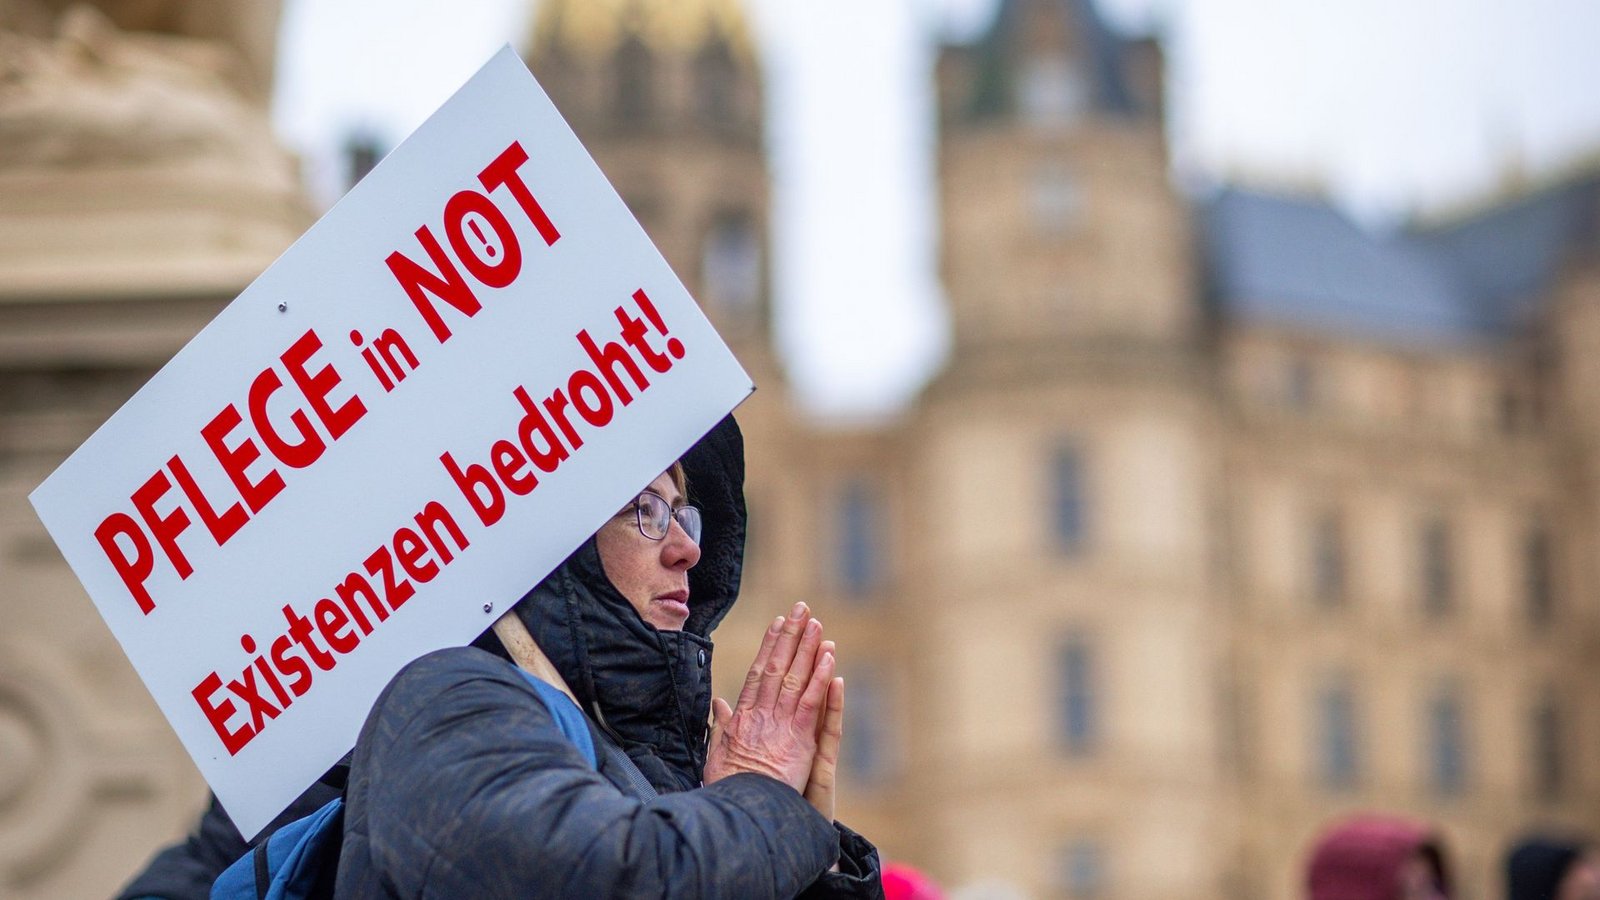 Bei einer Protestaktion vor dem Schweriner Landtag hält eine Teilnehmerin ein Schild mit der Aufschrift "Pflege in Not - Existenzen bedroht!".Foto: Jens Büttner/dpa